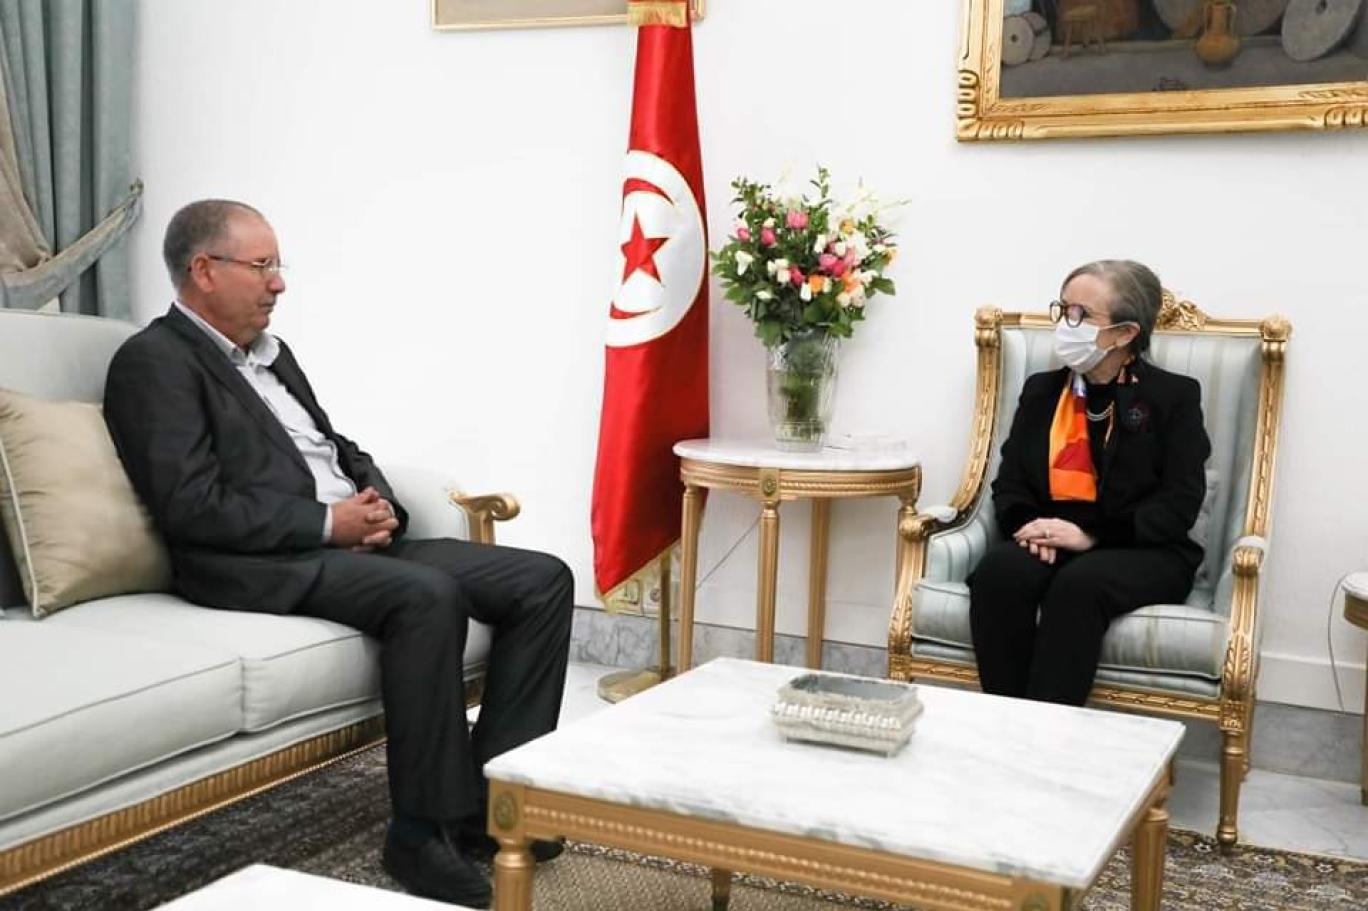 تفاؤل في تونس بعودة قنوات التواصل بين اتحاد الشغل وسعيد